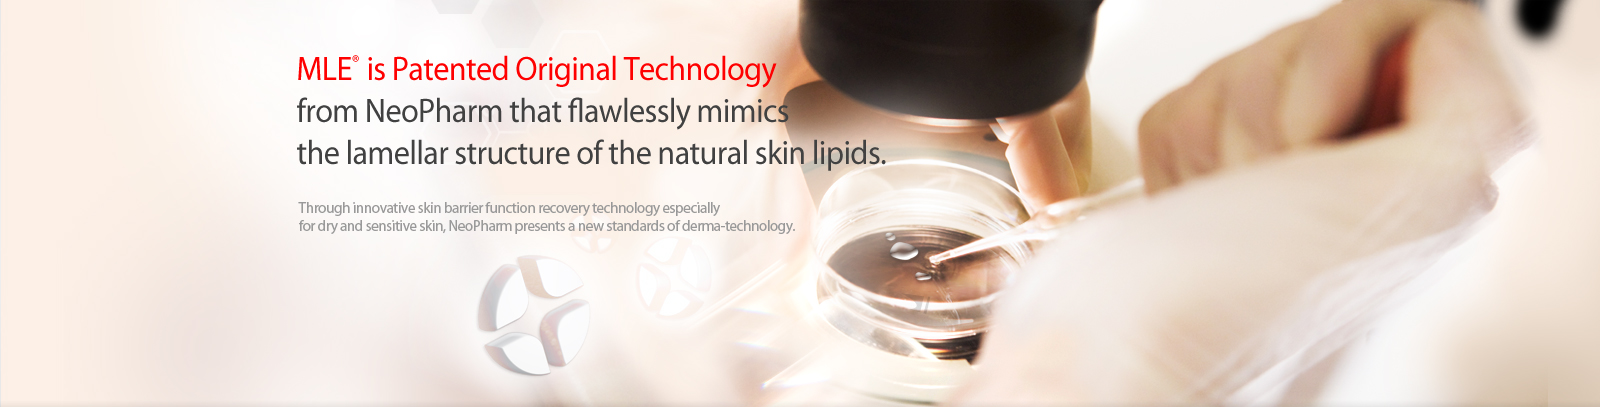 피부지질구조를 재현한 피부과학의 혁신!